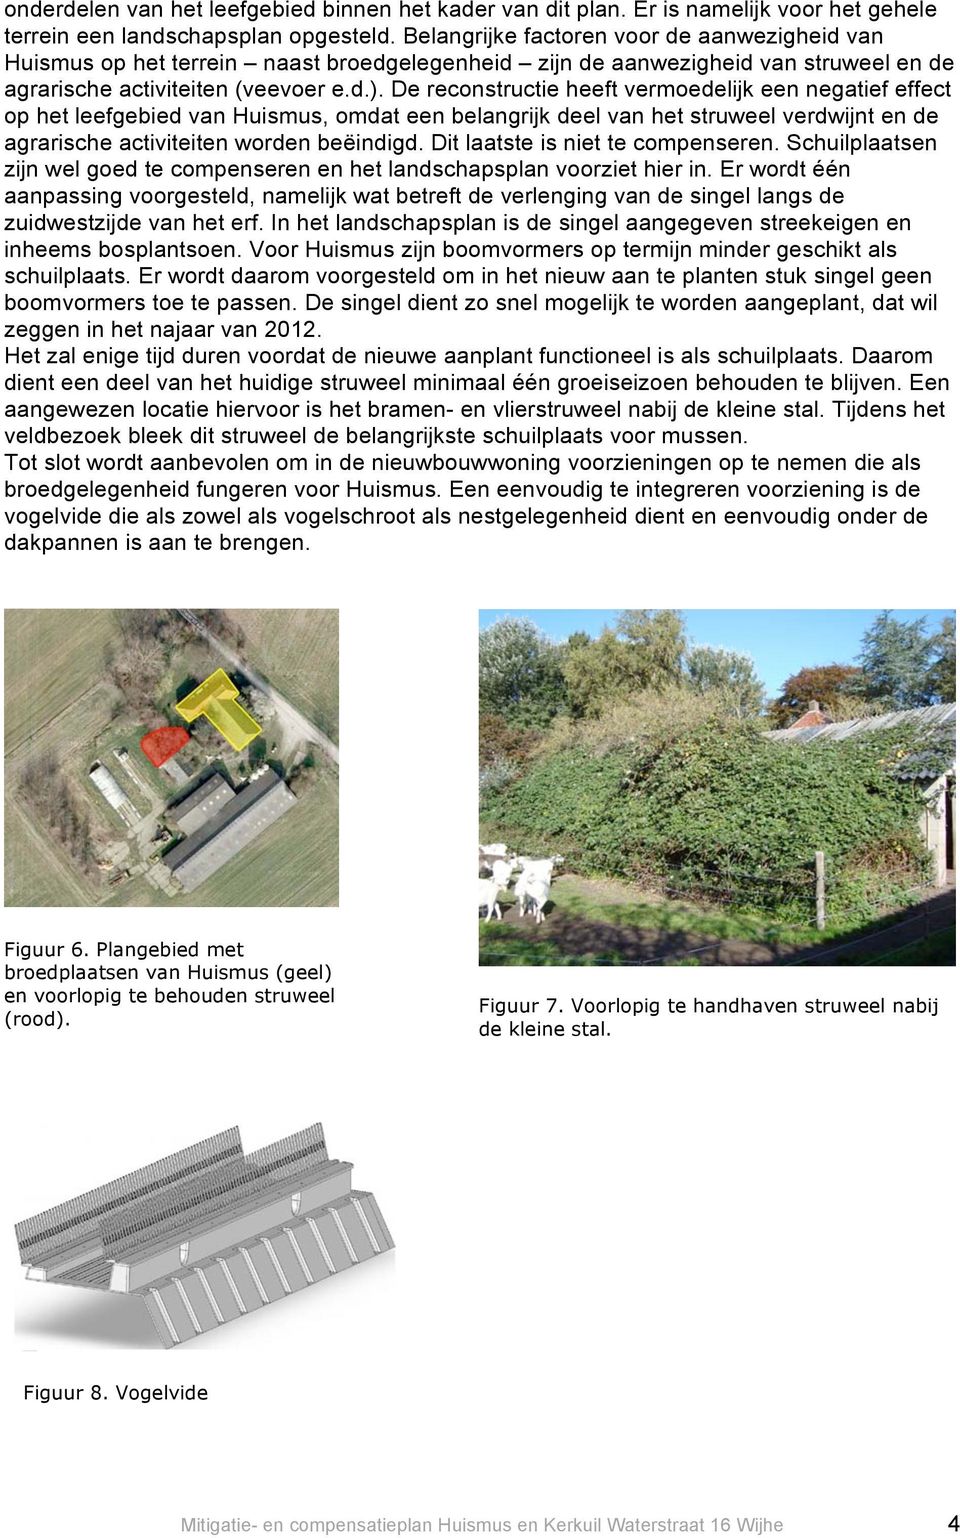 De reconstructie heeft vermoedelijk een negatief effect op het leefgebied van Huismus, omdat een belangrijk deel van het struweel verdwijnt en de agrarische activiteiten worden beëindigd.